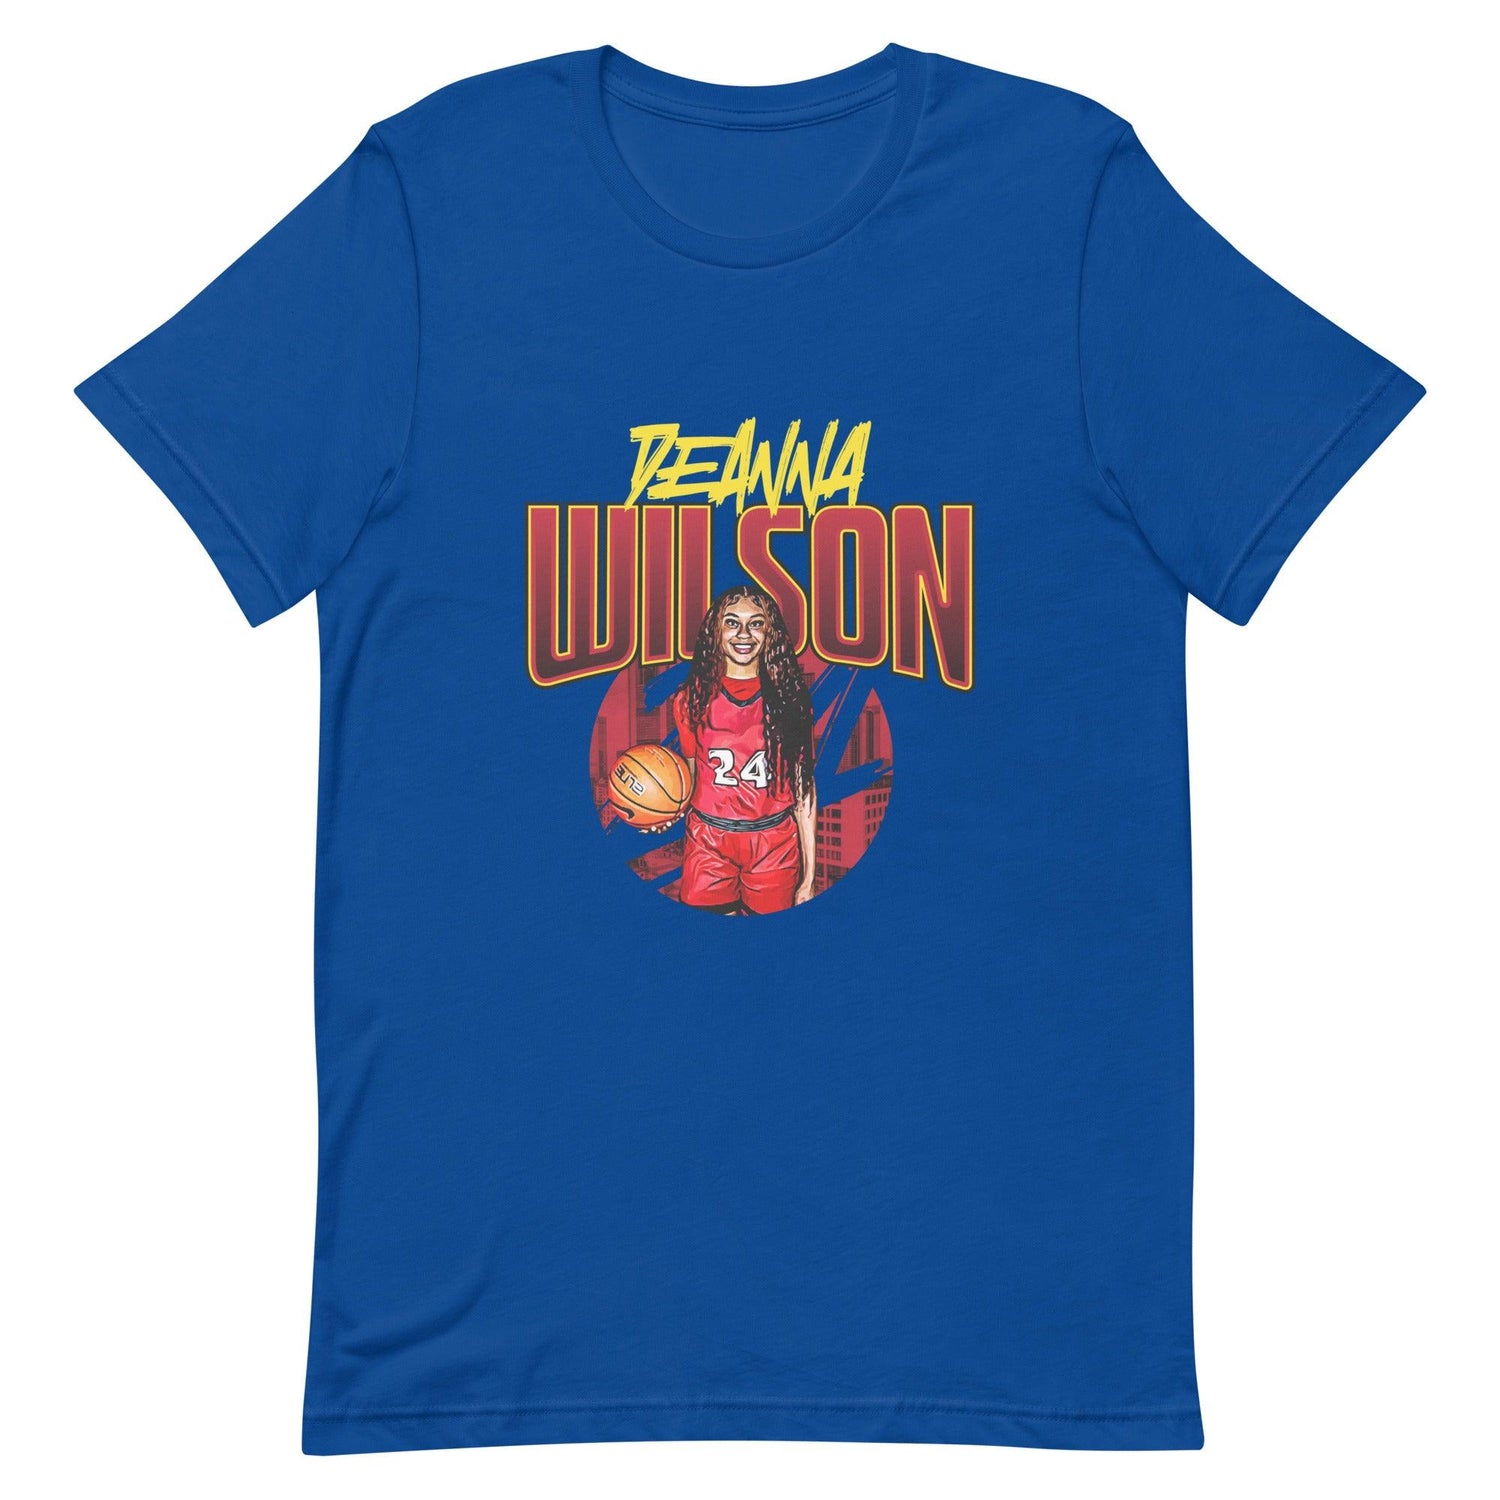 DeAnna Wilson "Gameday" t-shirt - Fan Arch